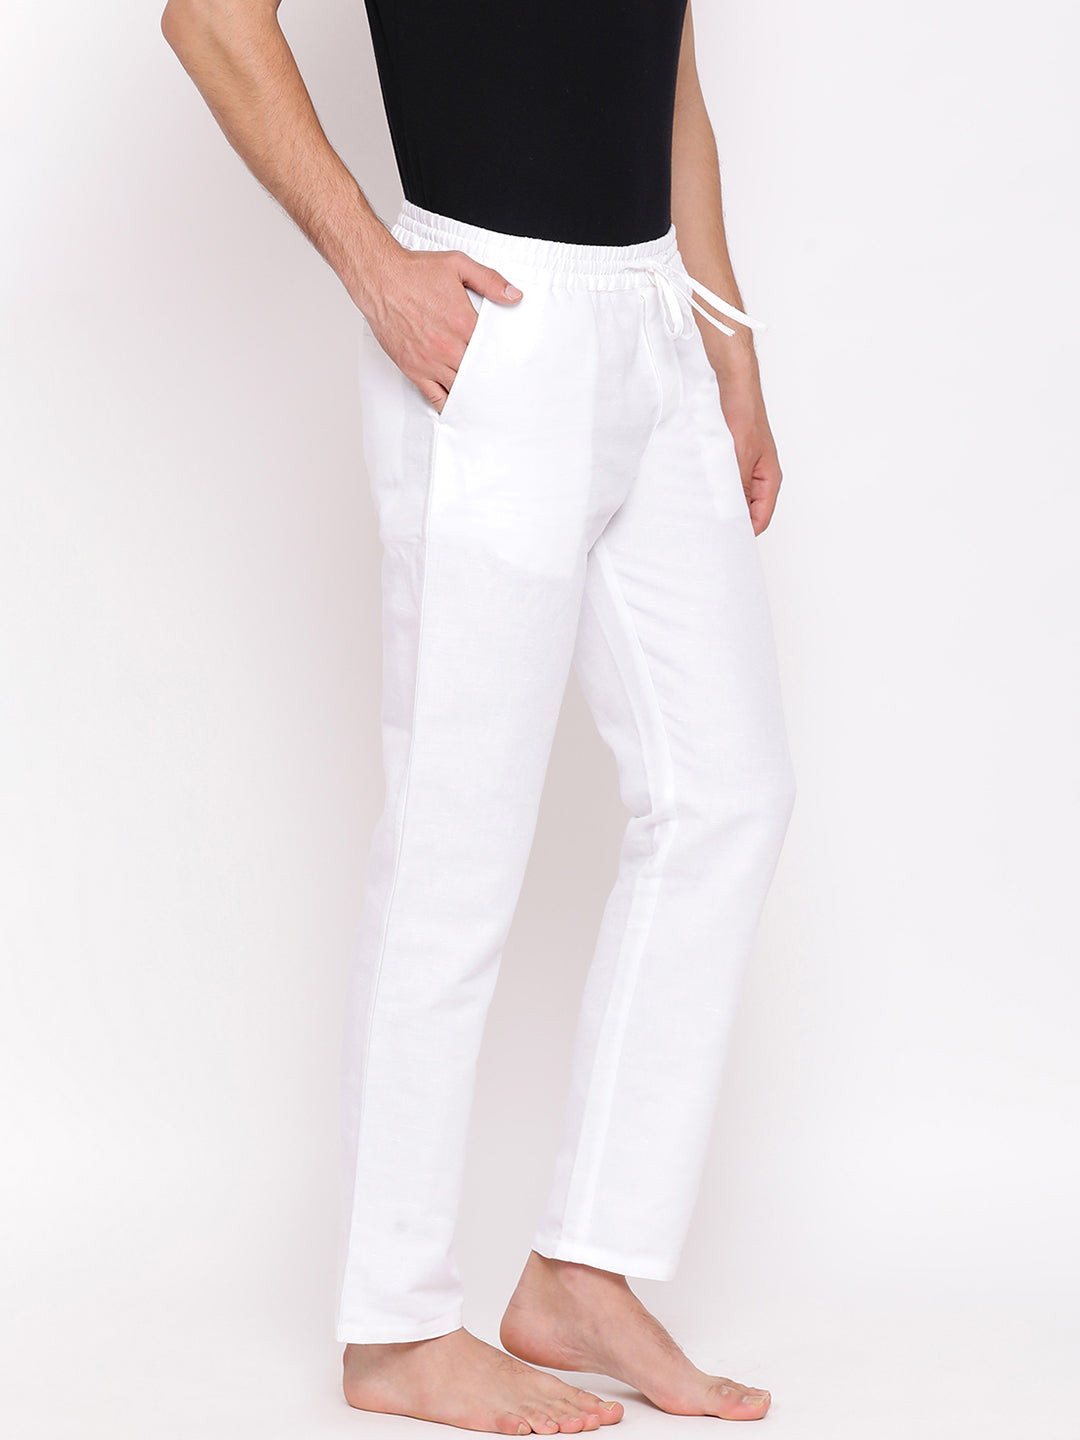 White Slim fit Cotton Lounge Pants - Men Lounge Pants